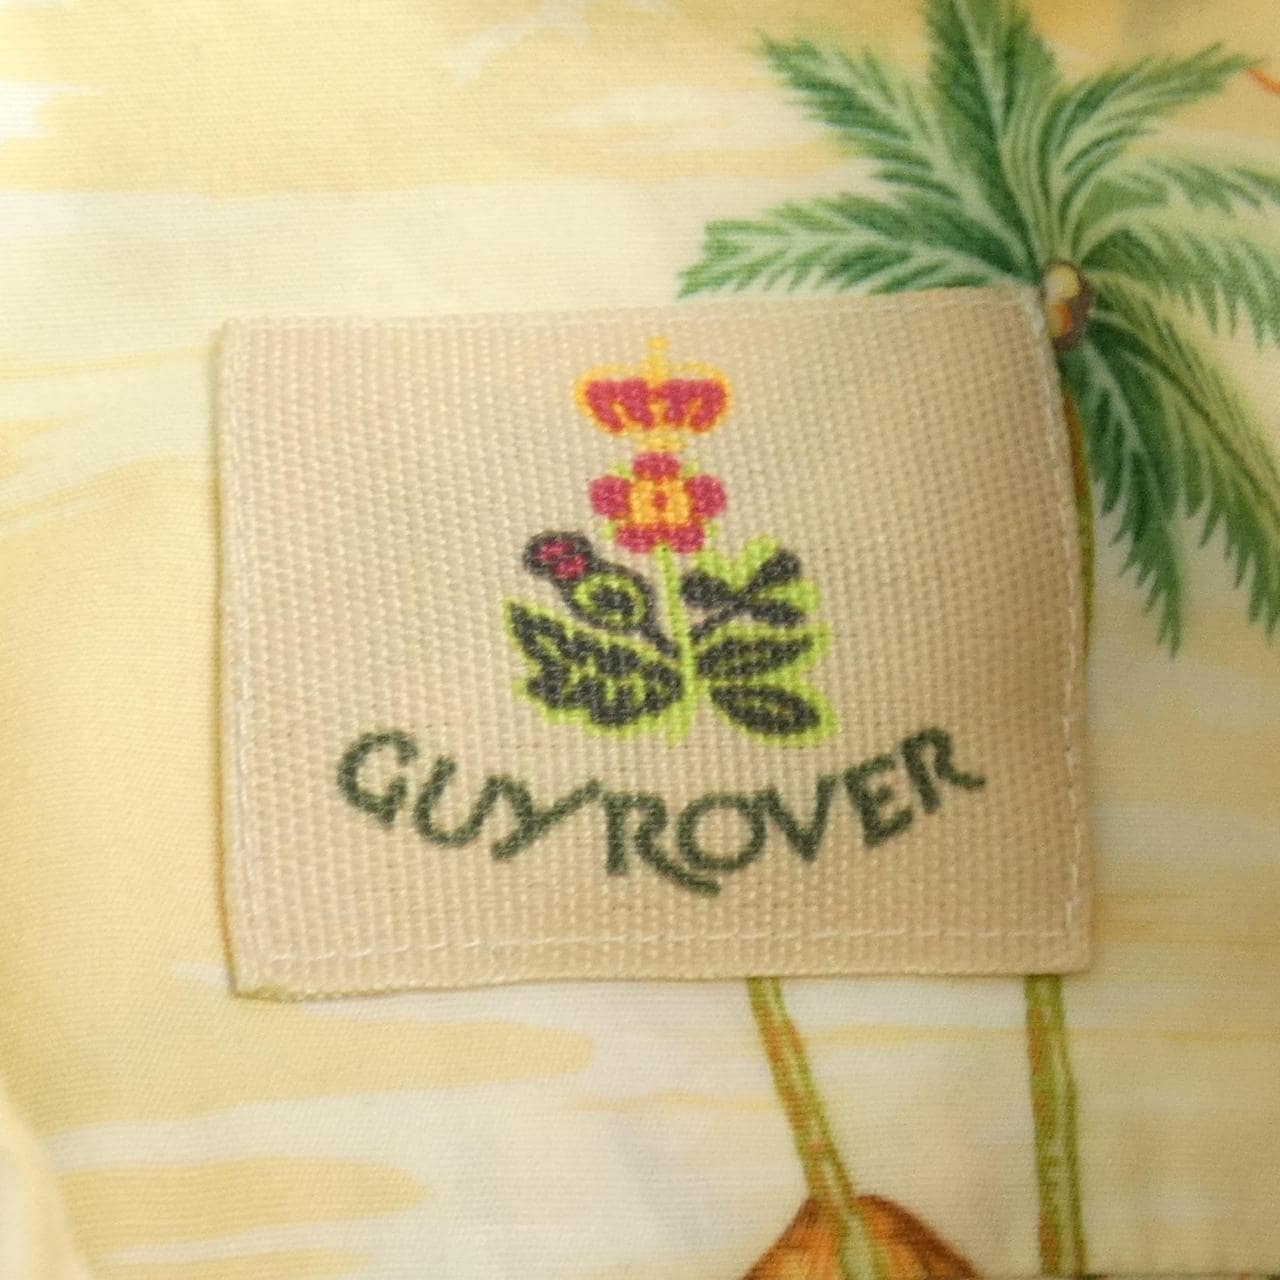 ギローバー GUY ROVER シャツ